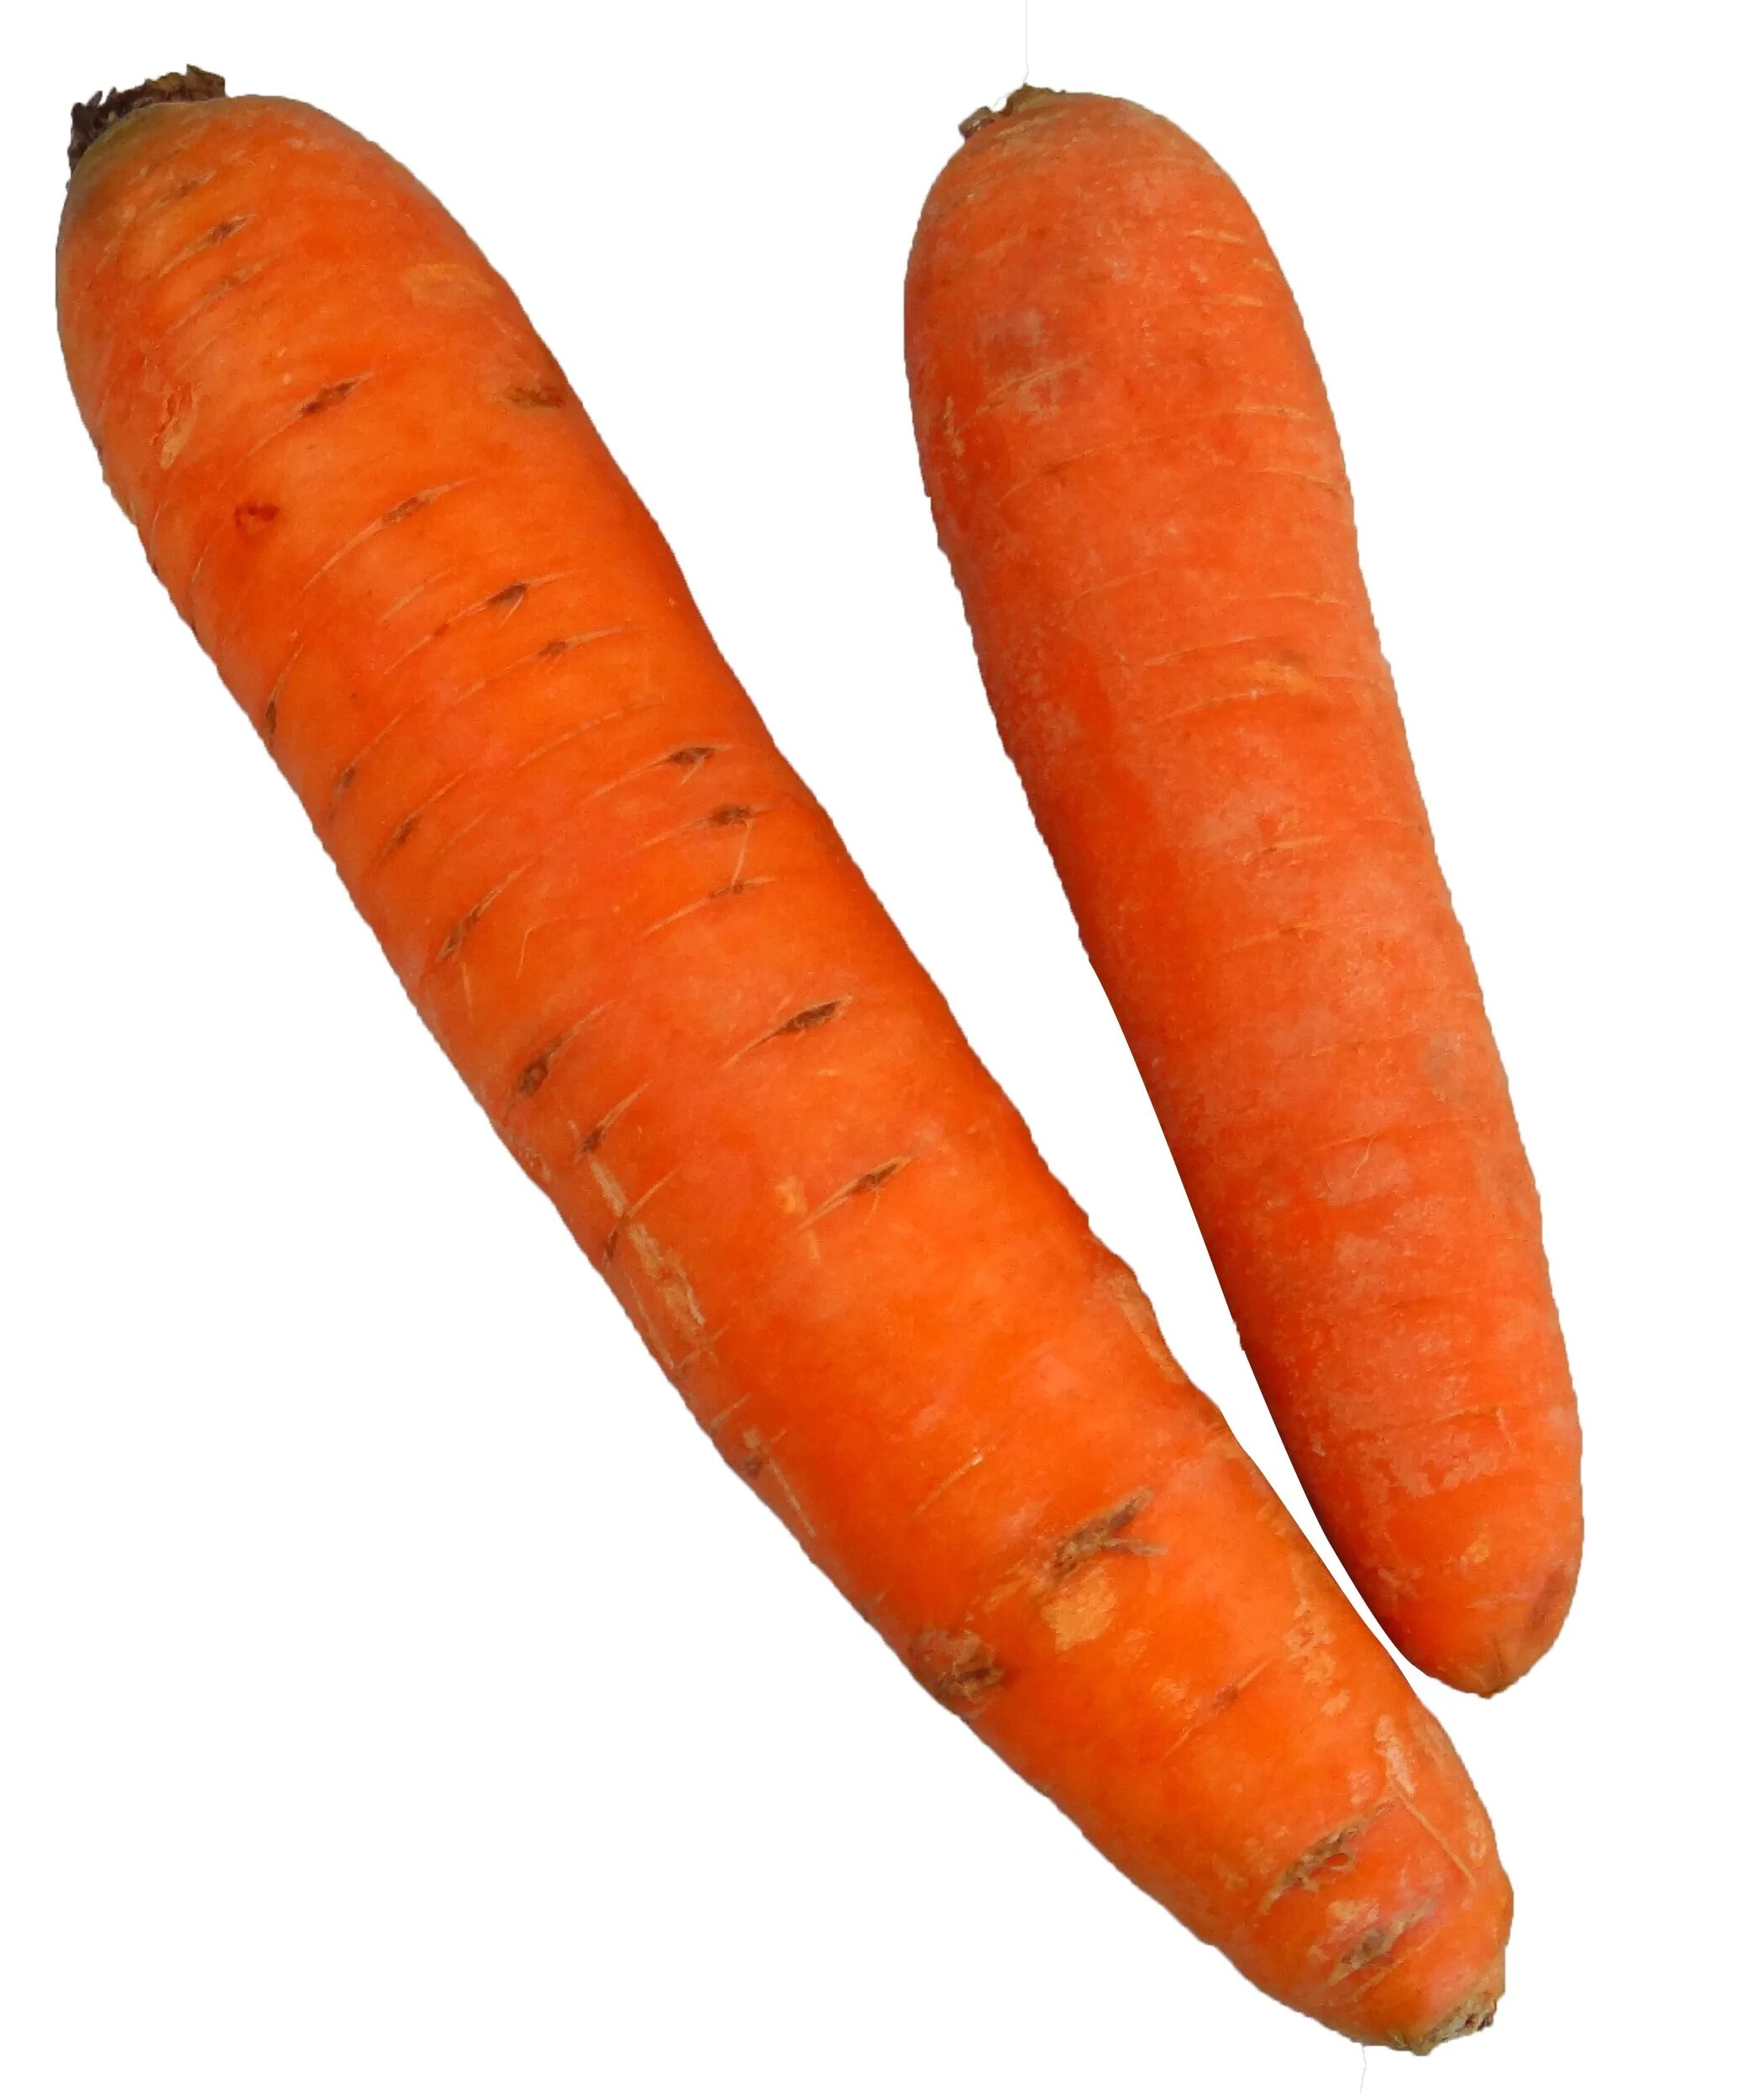 Carrot vegetable. Морковь. Овощи по отдельности. Оранжевая морковь. Крупная морковь.